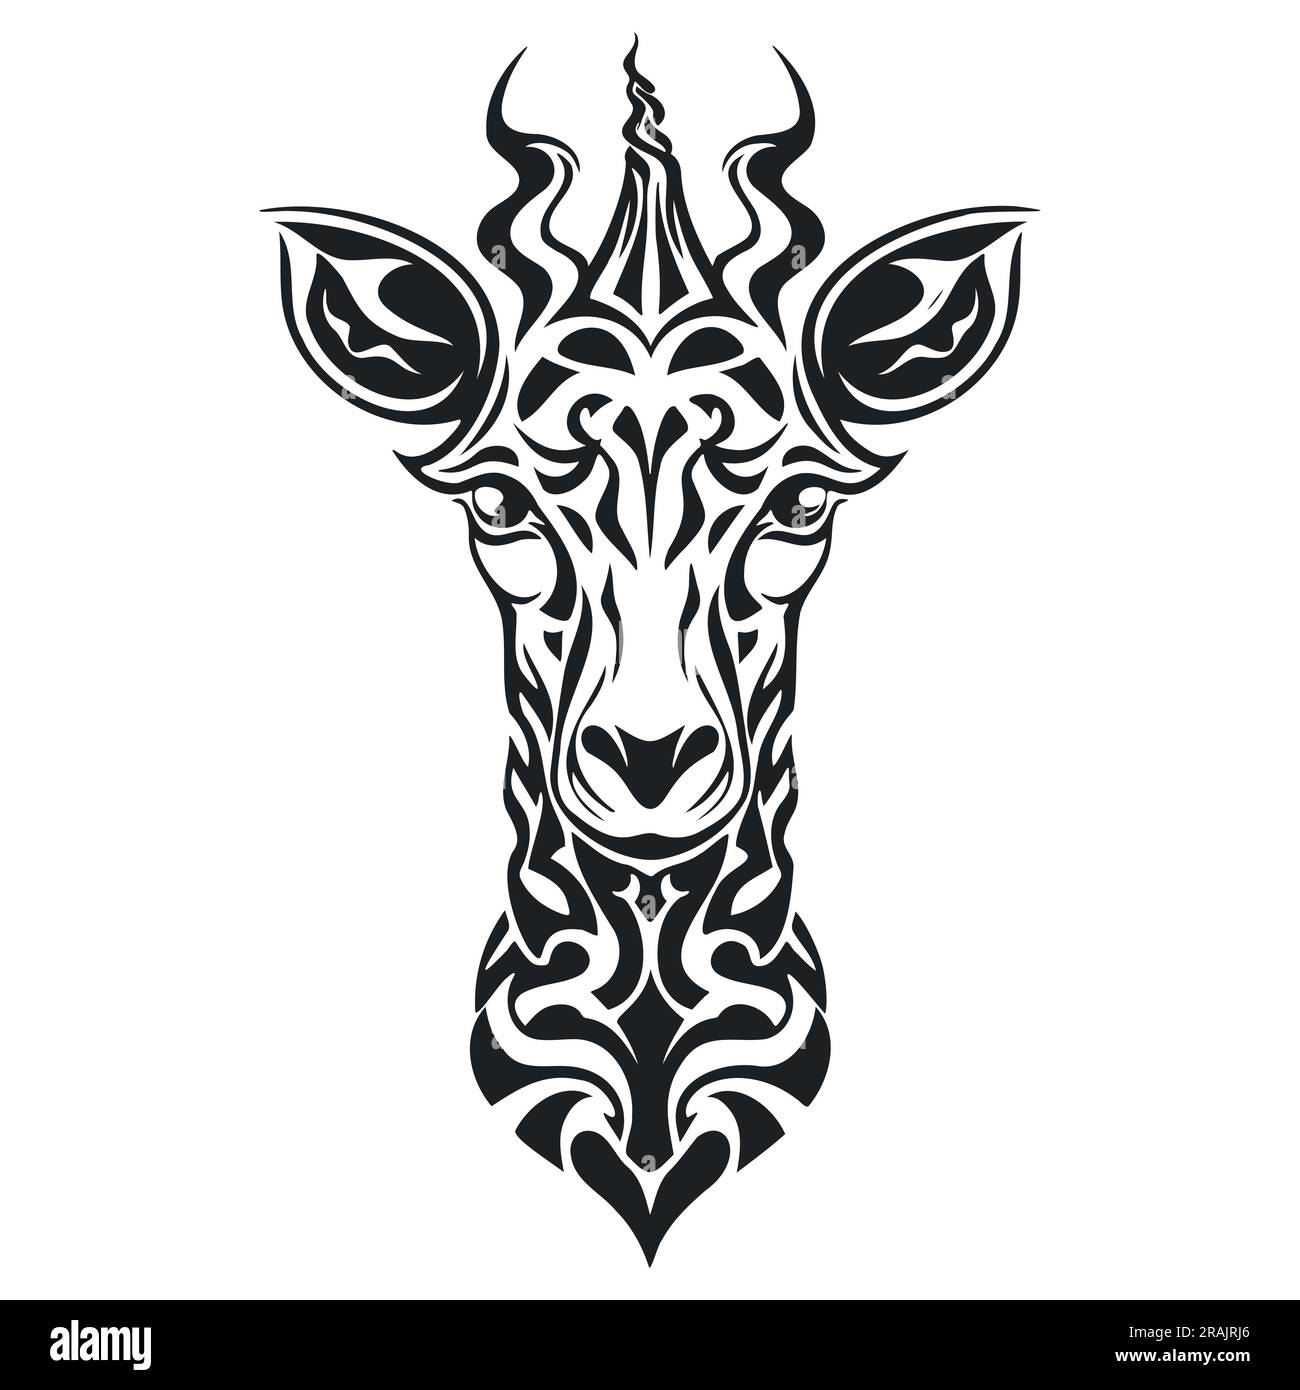 Giraffen-Tier-Illustration, Naturschutzvektor. EPS 10 Stock Vektor